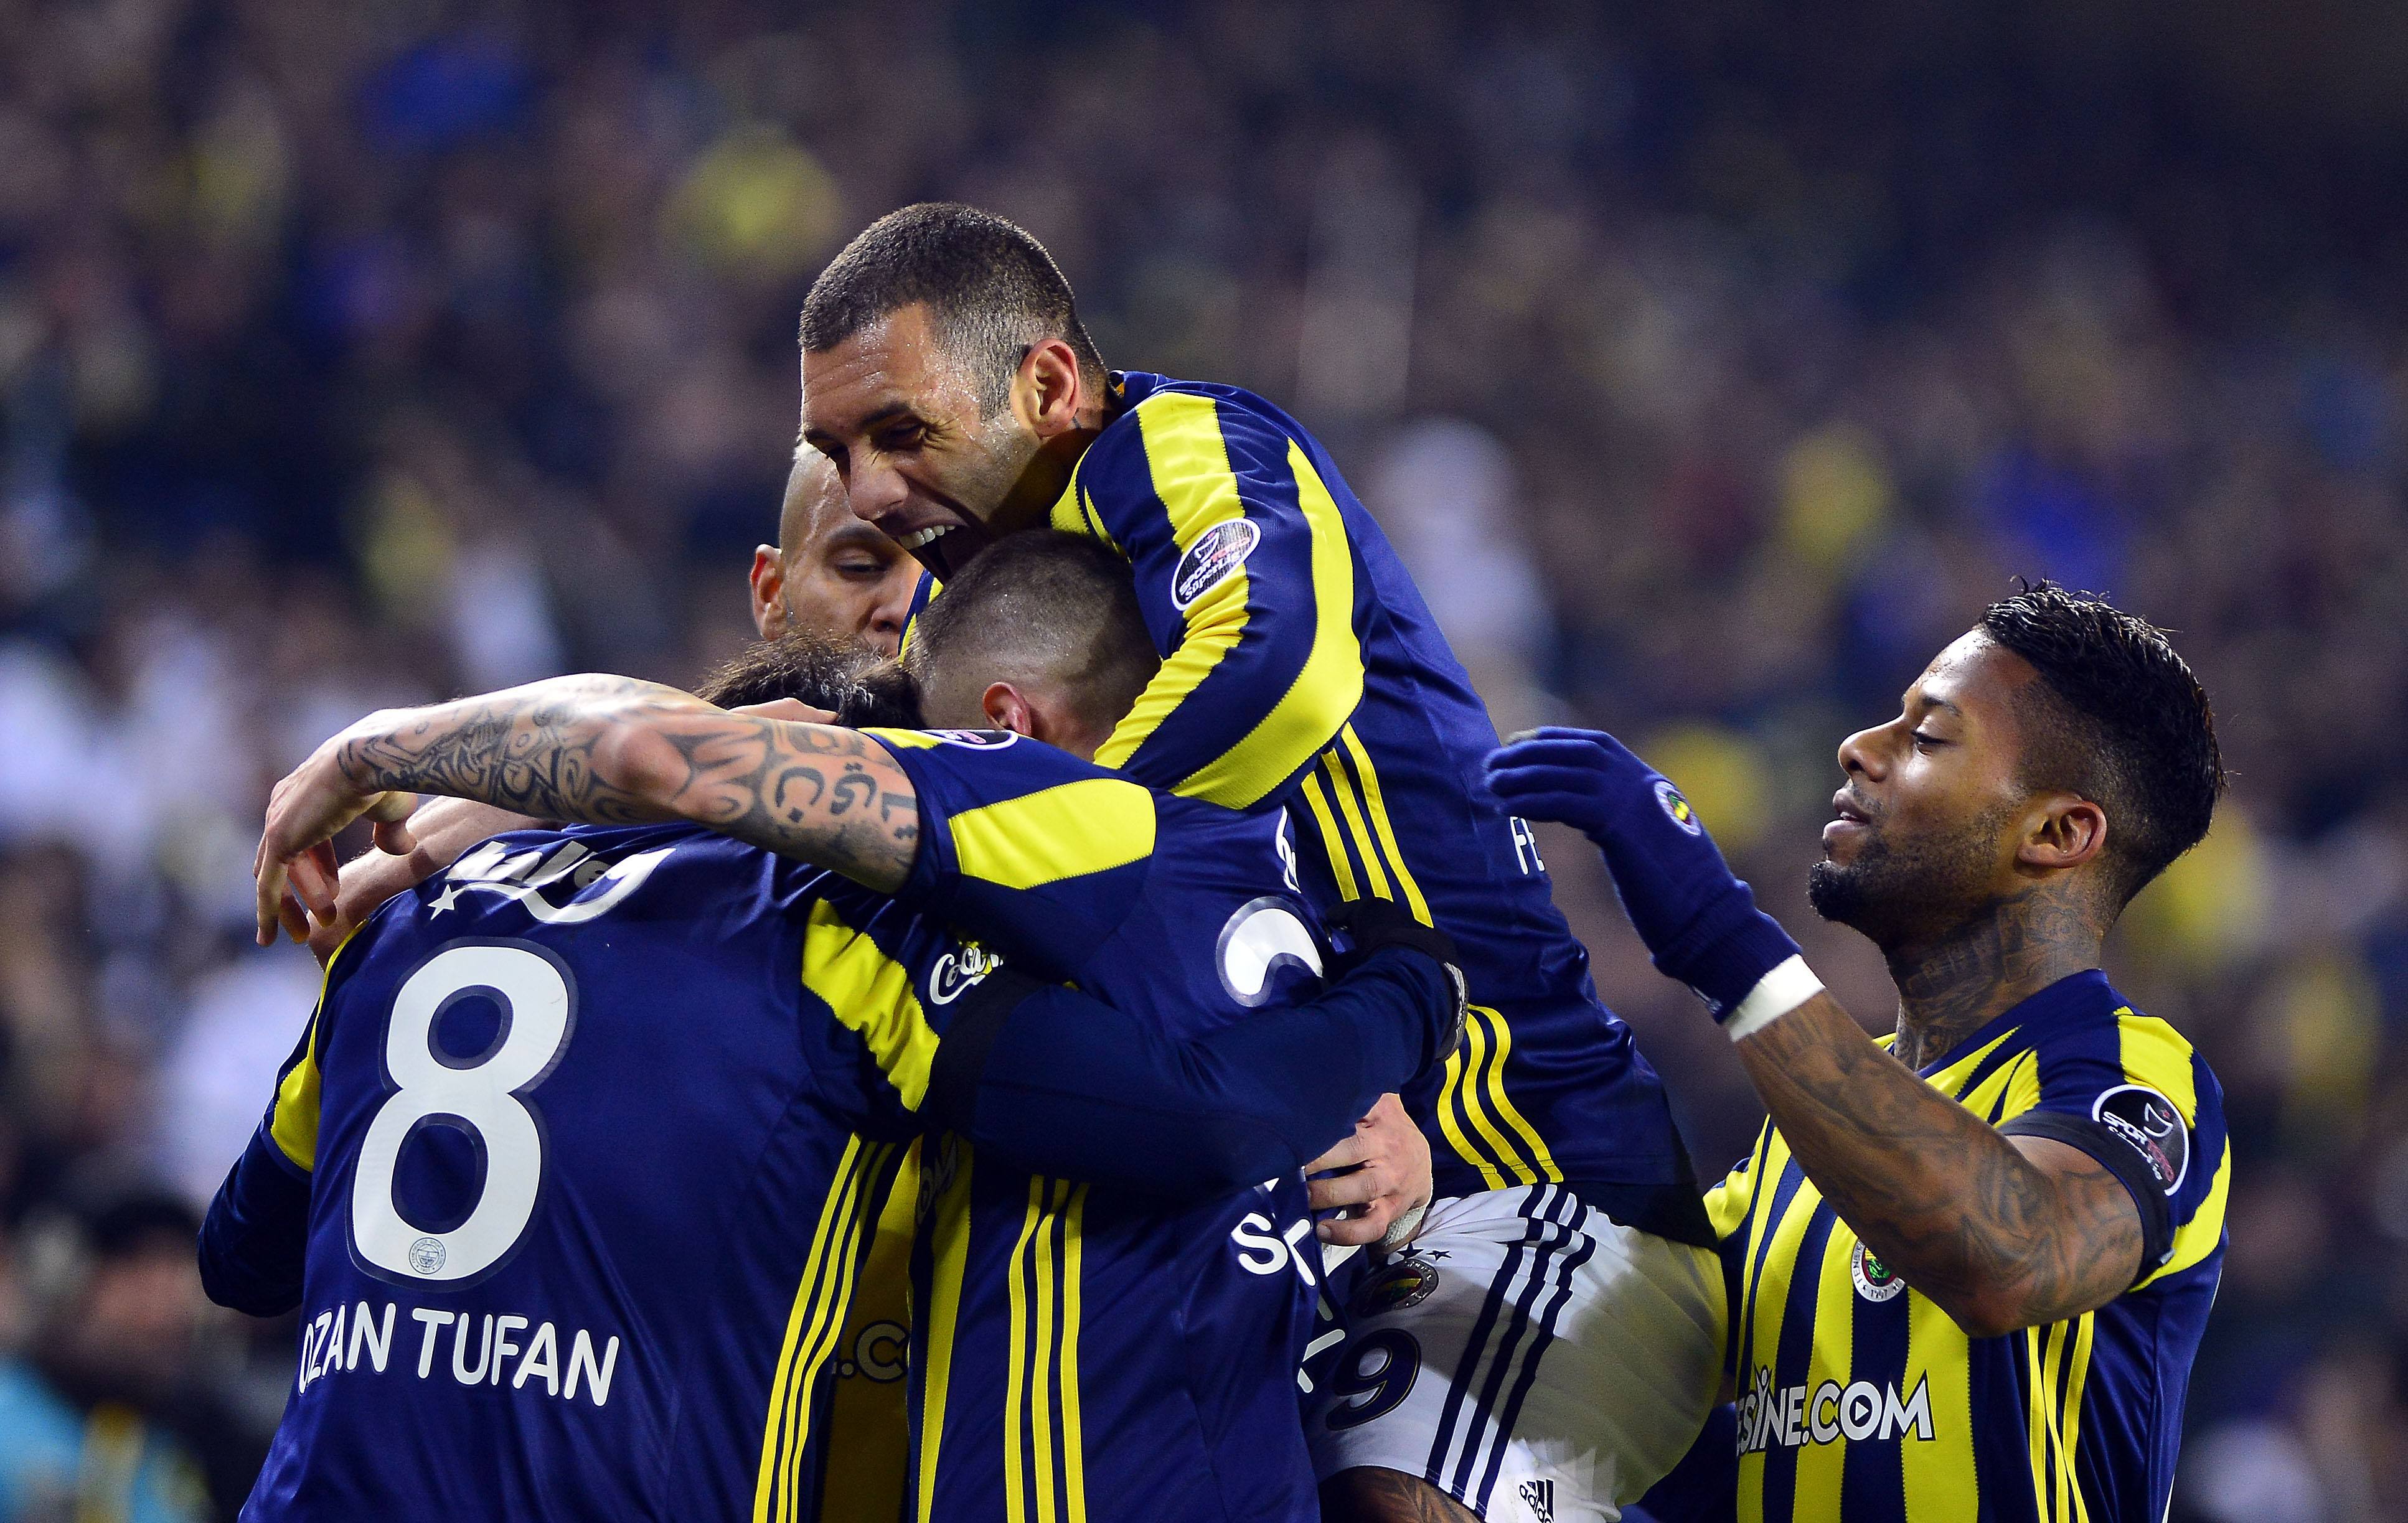 Adanaspor Fenerbahçe Maçı İddaa Tahmini ve Yorumu 03.06.2017